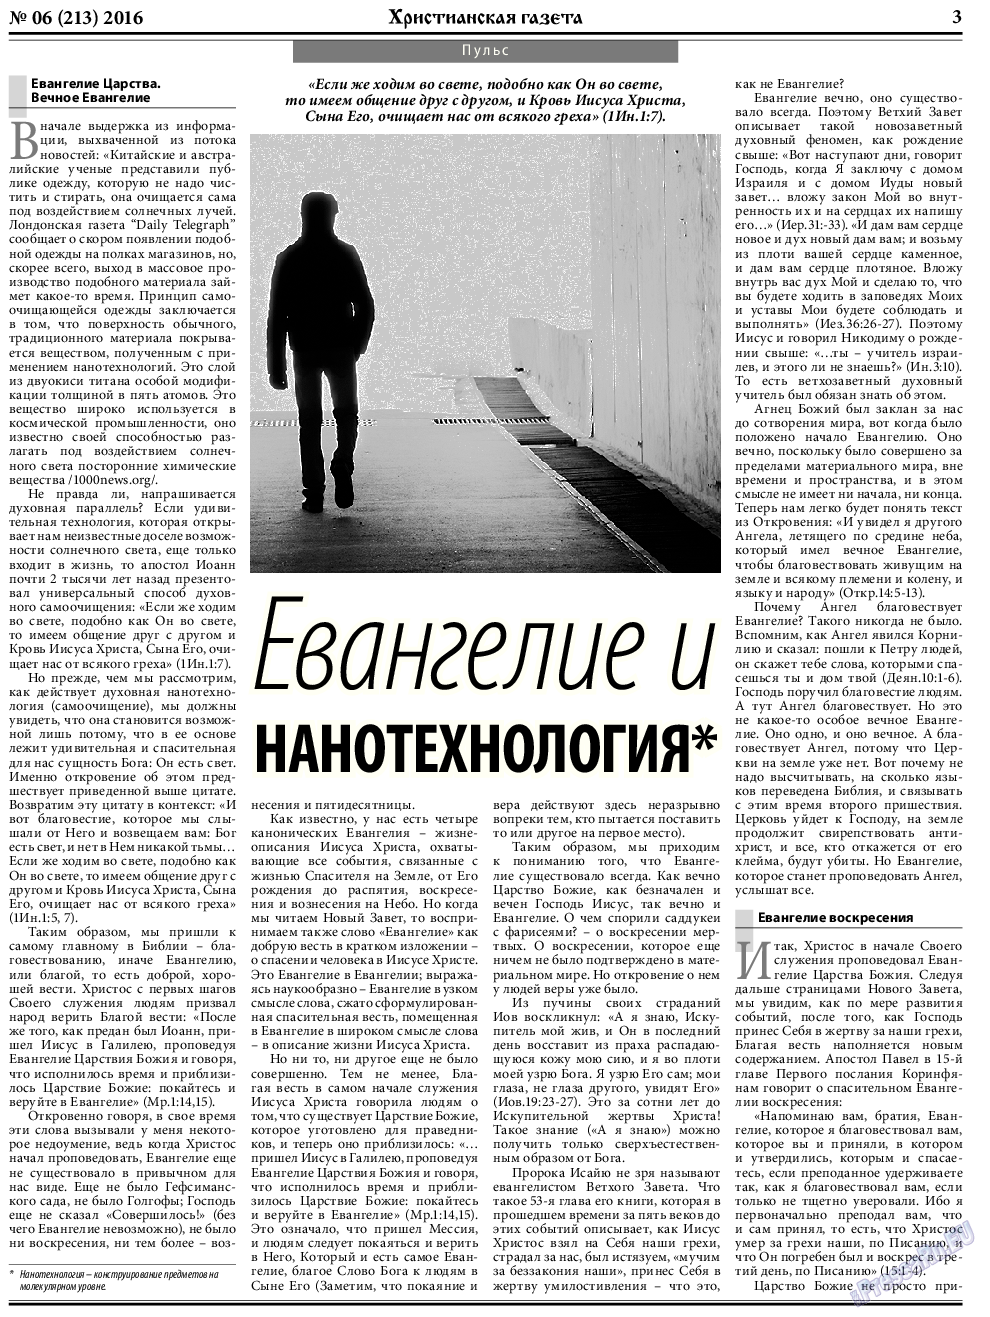 Христианская газета, газета. 2016 №6 стр.3